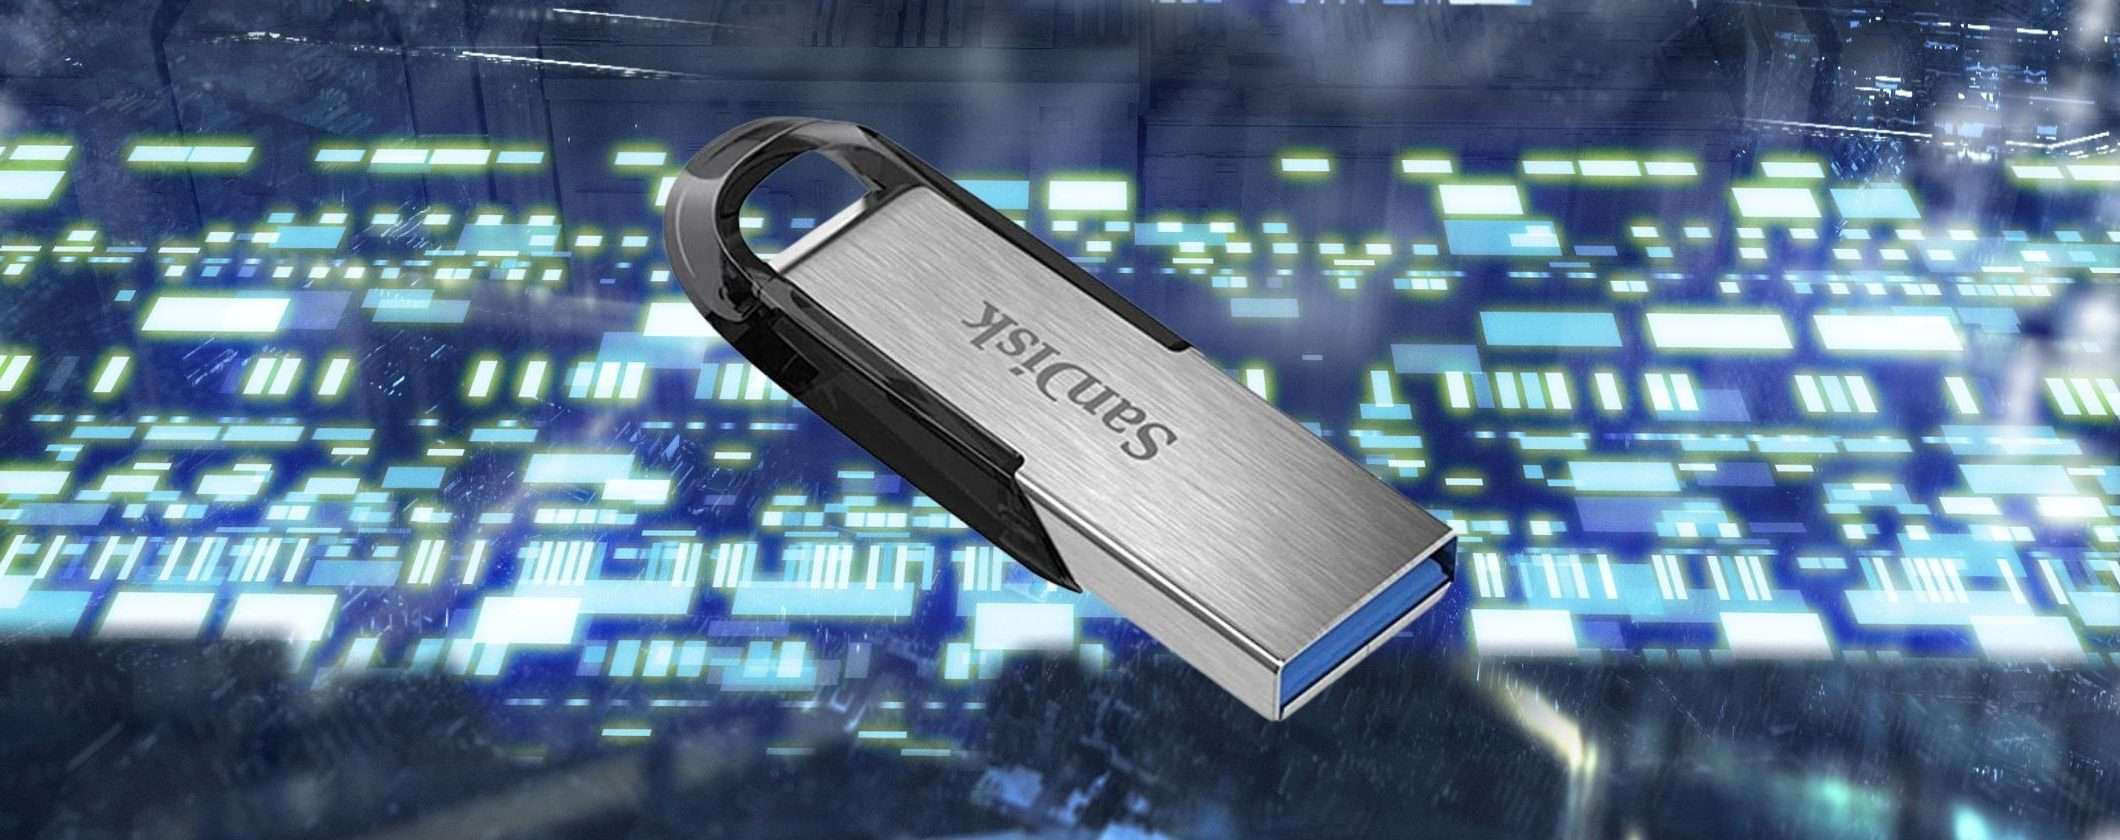 Chiavetta USB 256GB SanDisk a 22€, capienza e risparmio su Amazon